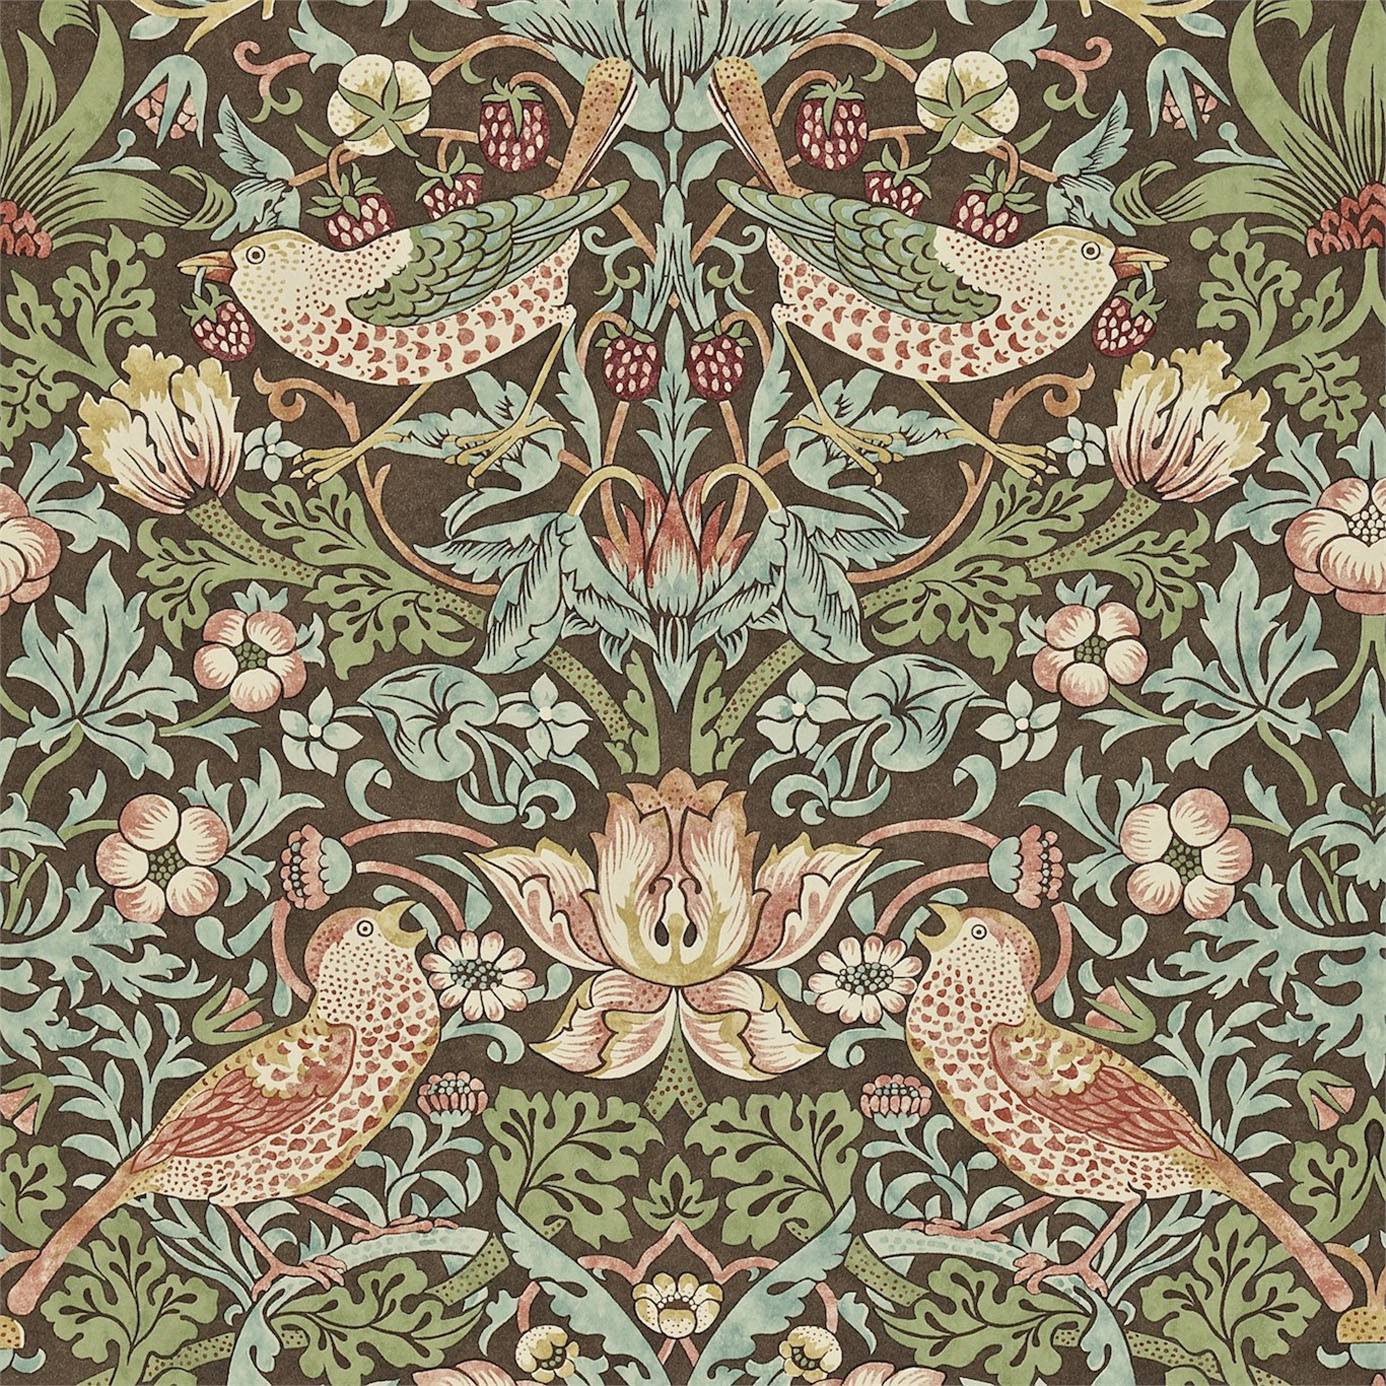 ウィリアム・モリス壁紙,パターン,モチーフ,褐色,繊維,設計